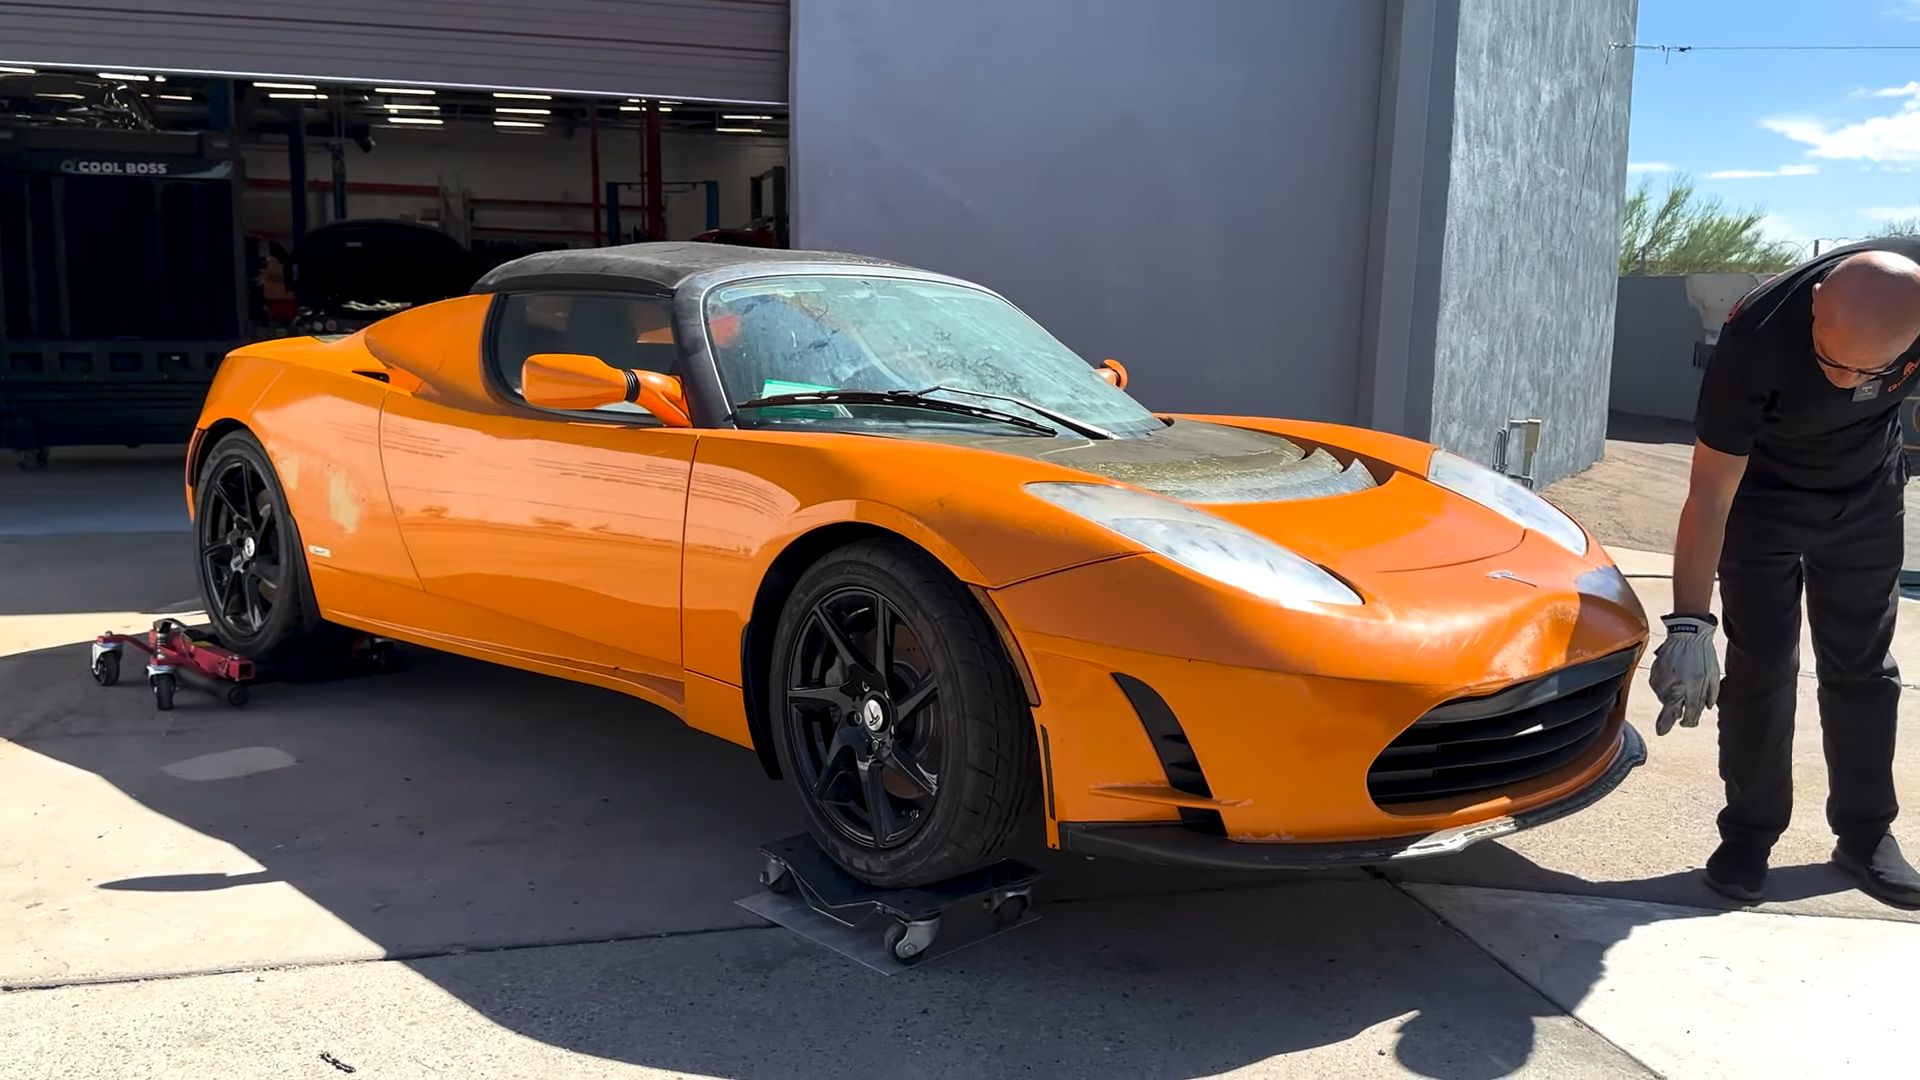 Orange Tesla Roadster